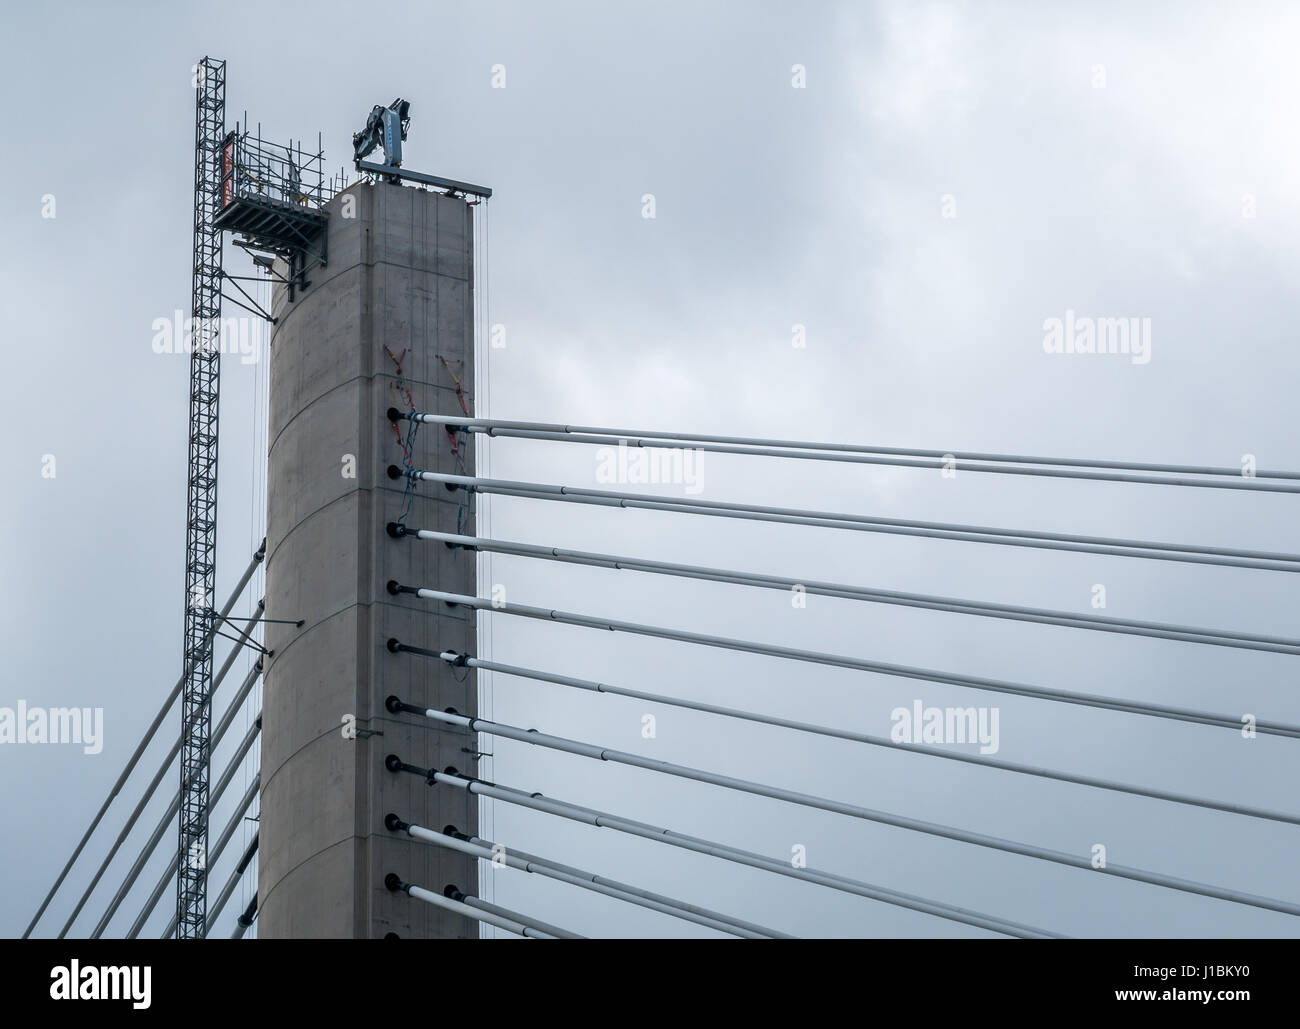 Vue rapprochée du sommet de la tour de pont du nouveau Queensferry Crossing, qui se termine en 2017, Firth of Forth, Écosse, Royaume-Uni Banque D'Images